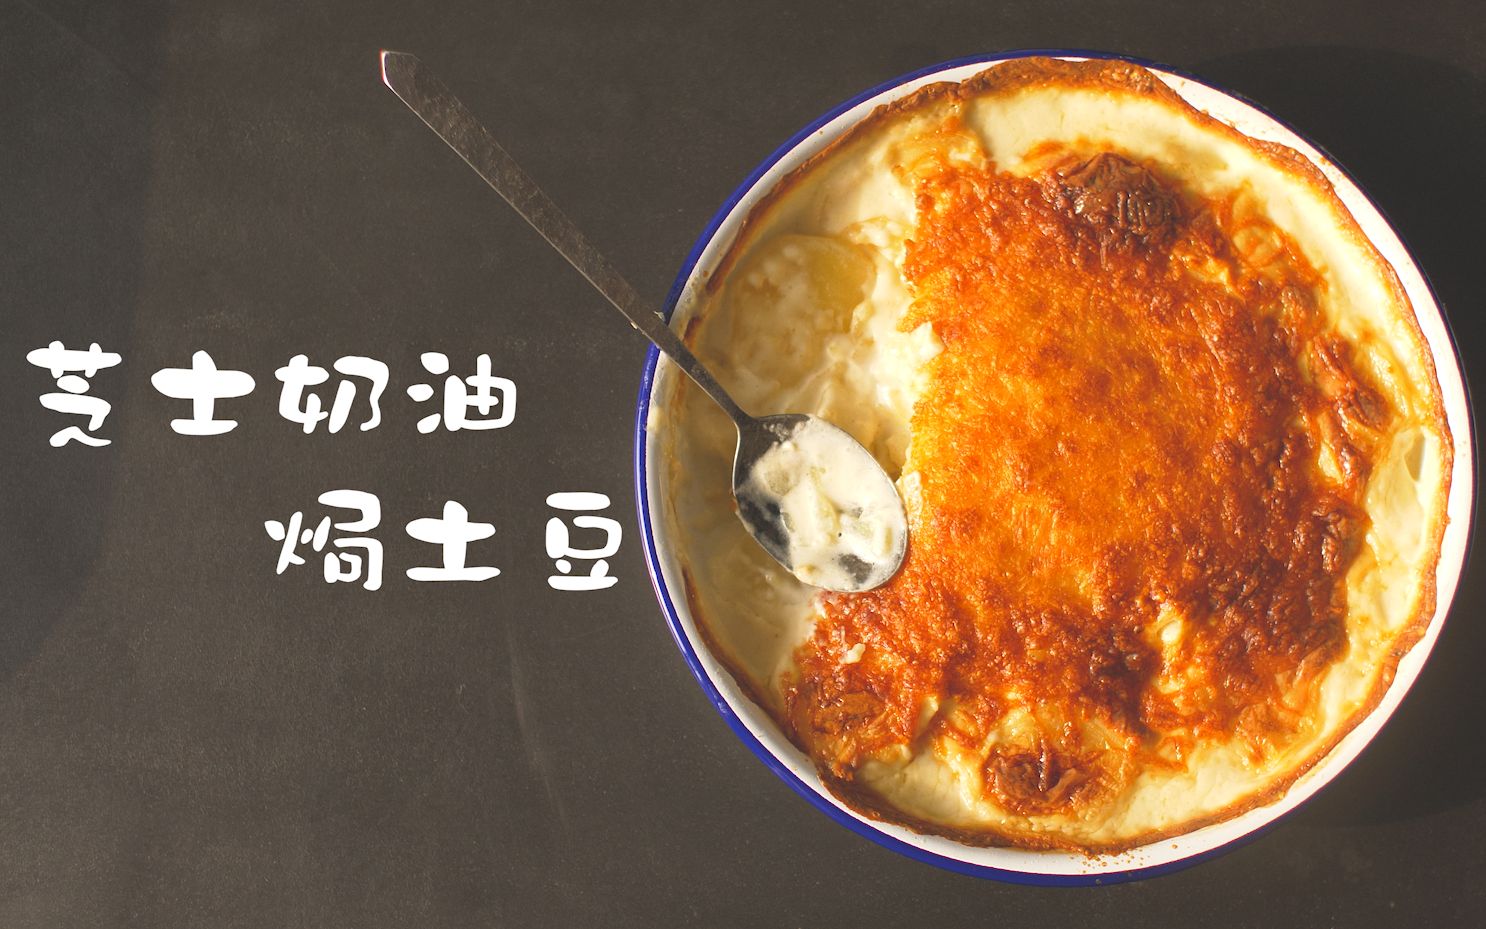 【芝士奶油焗土豆】没有比这更简单更爆炸的食物了！